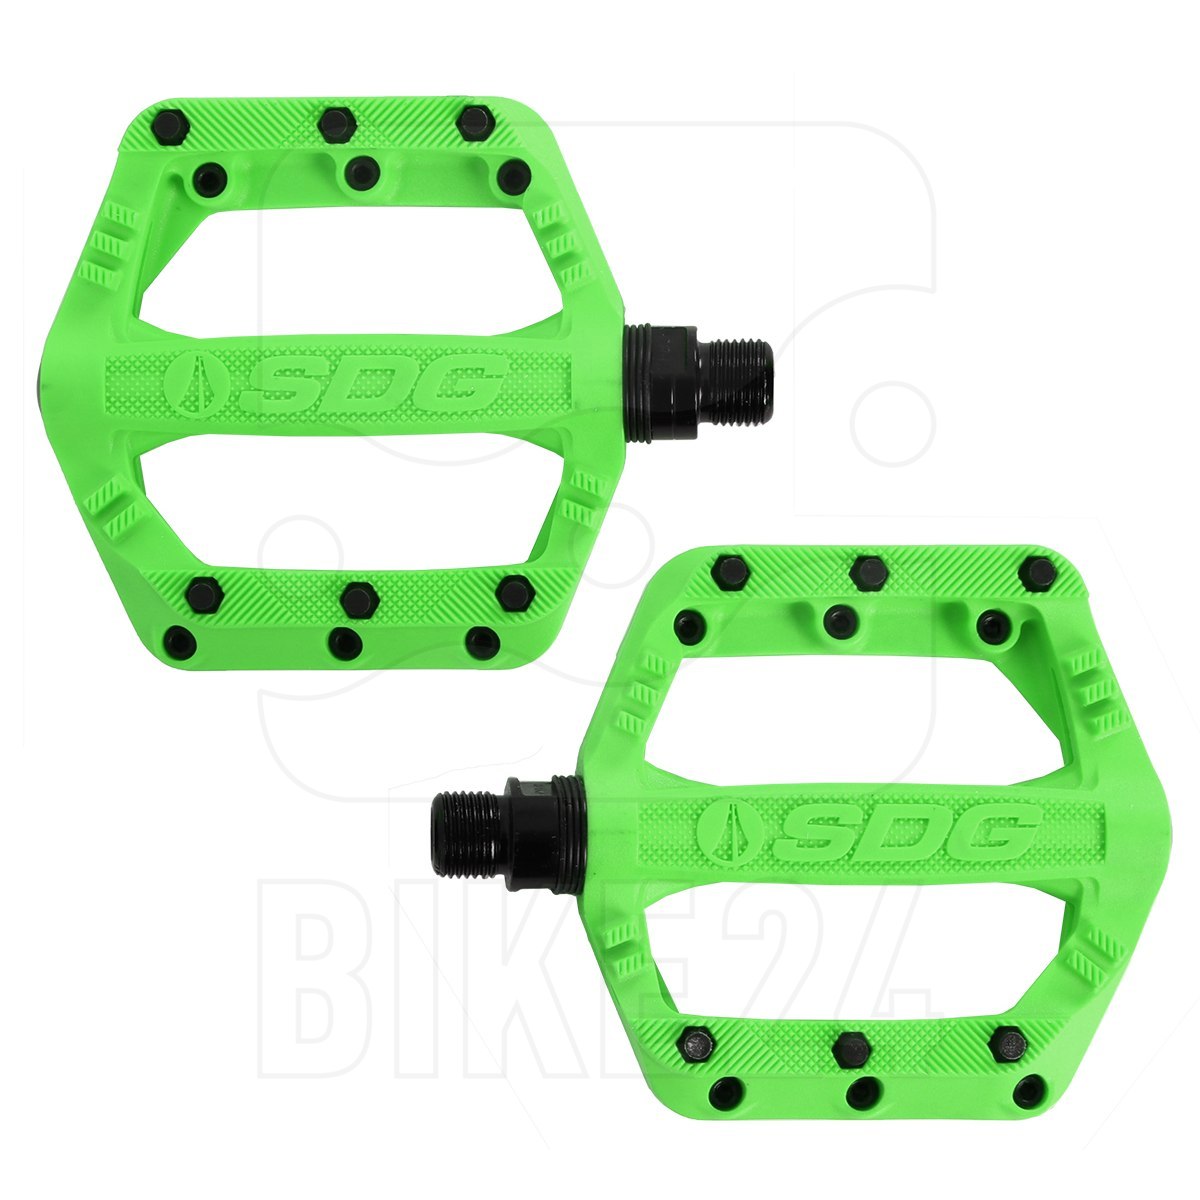 Produktbild von SDG Slater Jr. Pedal für Kinder - neon grün